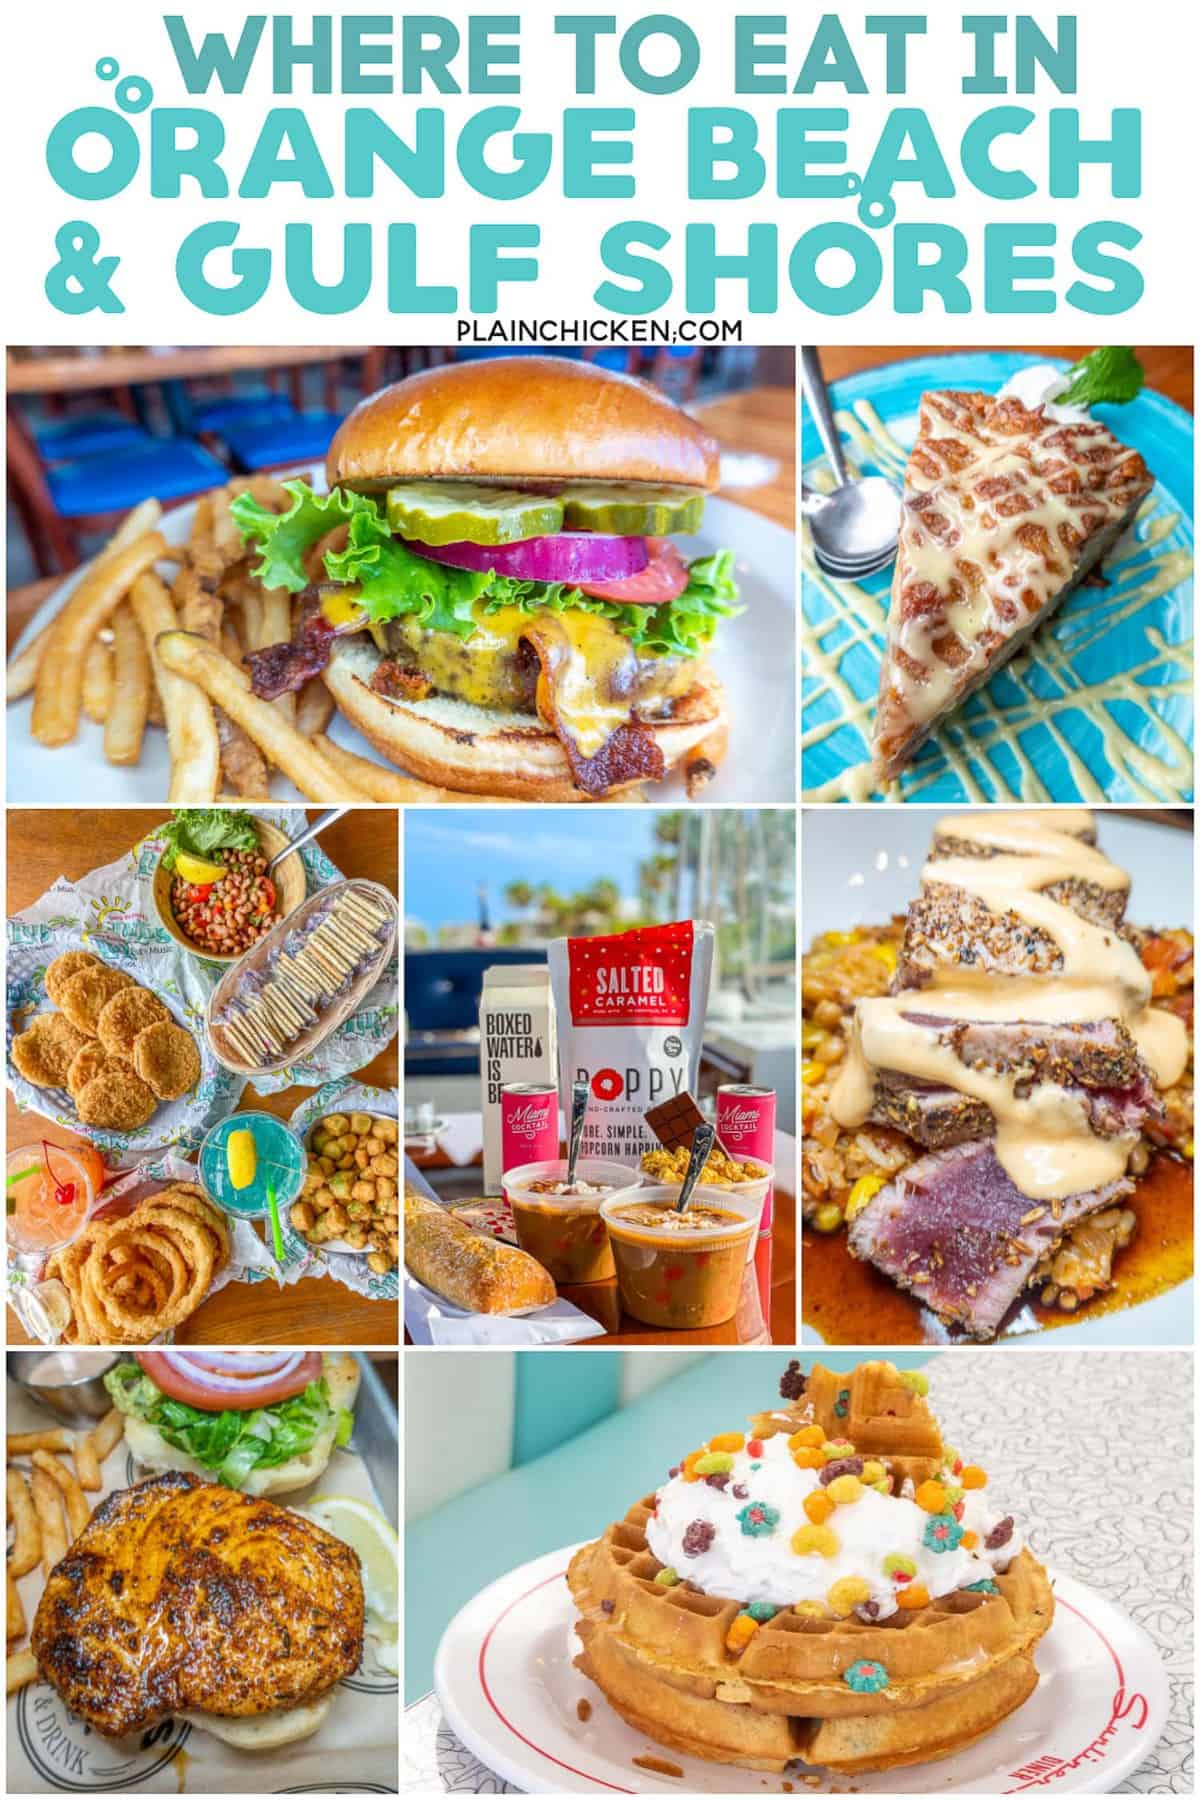 Best Restaurants in Gulf Shores & Orange Beach, AL - Plain Chicken